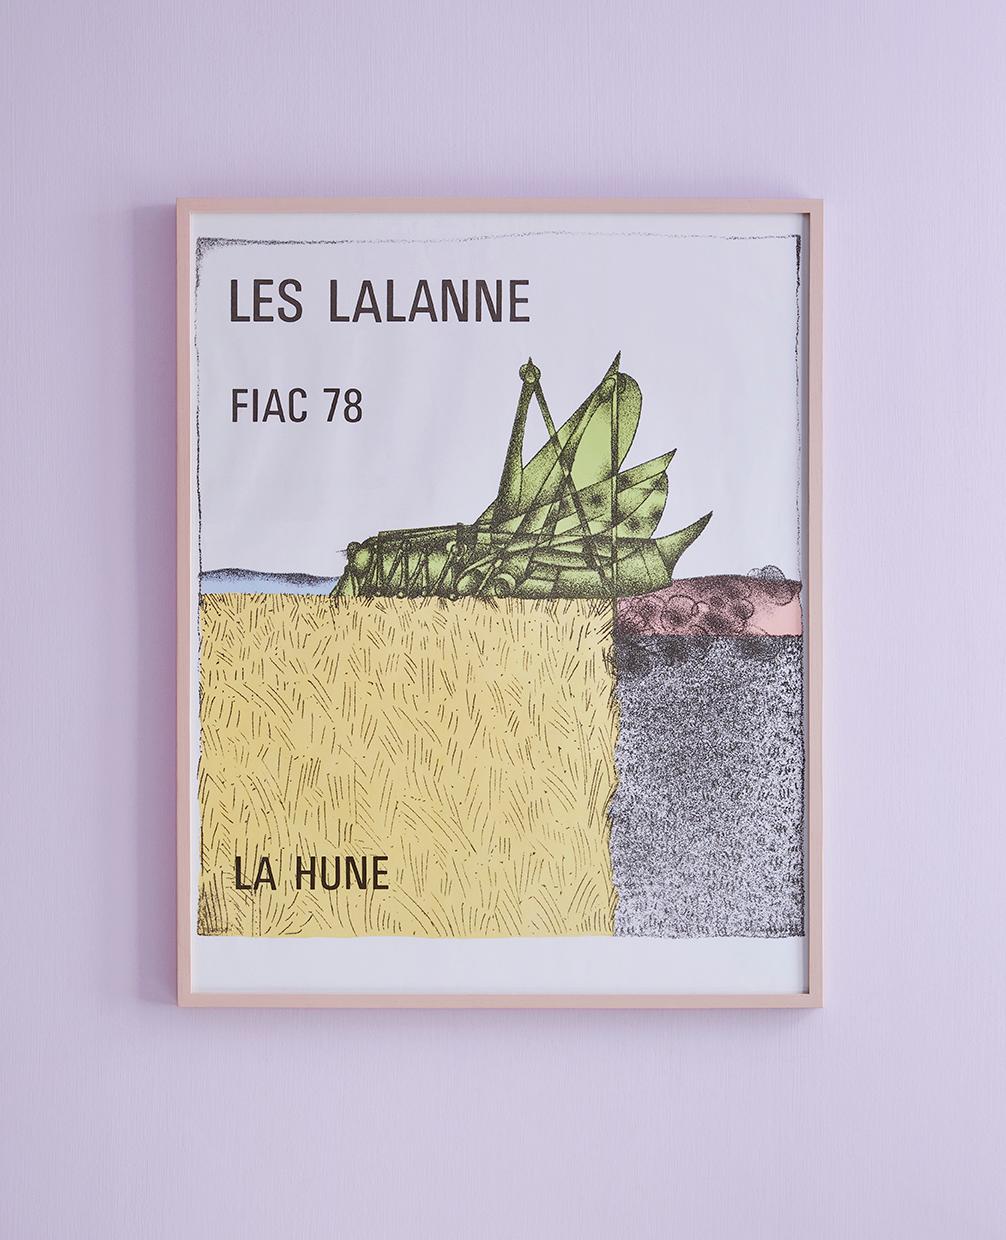 Francois-Xavier Lalanne
France, 1978

“Les Lalanne. La Hune. Fiac 78”. Vintage exhibition poster.

H 82 x W 66 x D 3 cm

